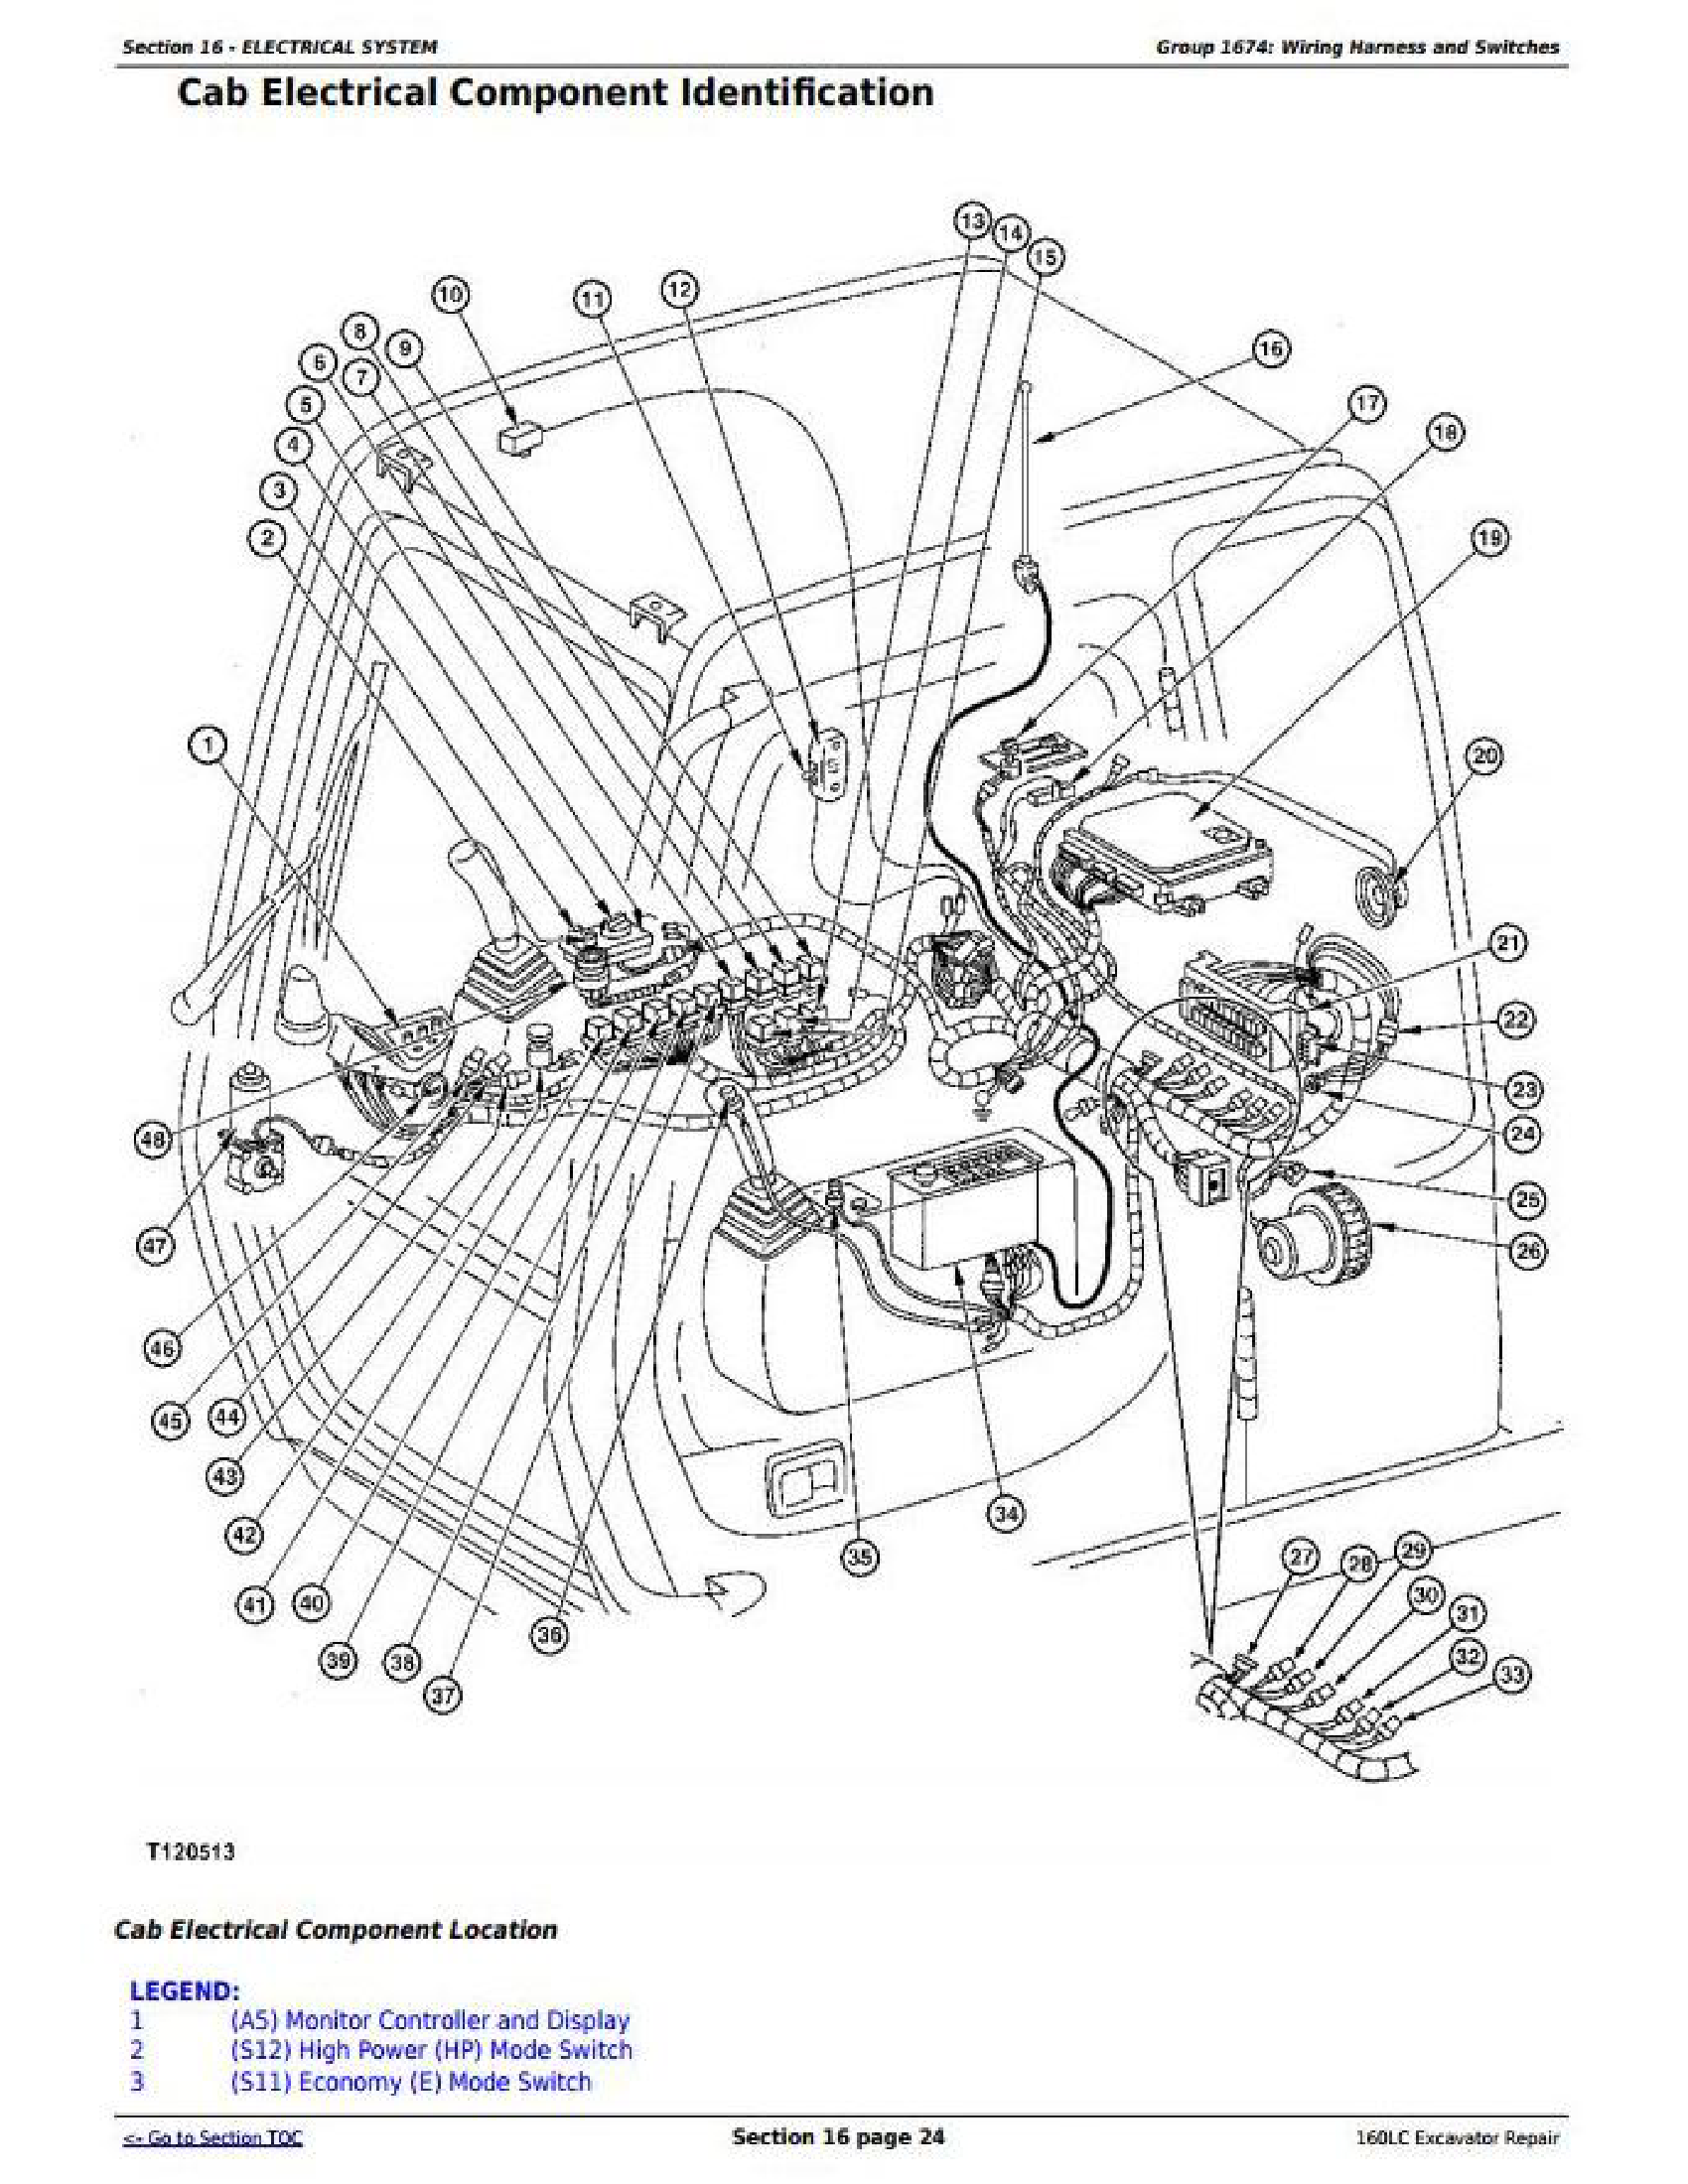 John Deere 160LC Excavator Service Repair Technical Manual tm1662